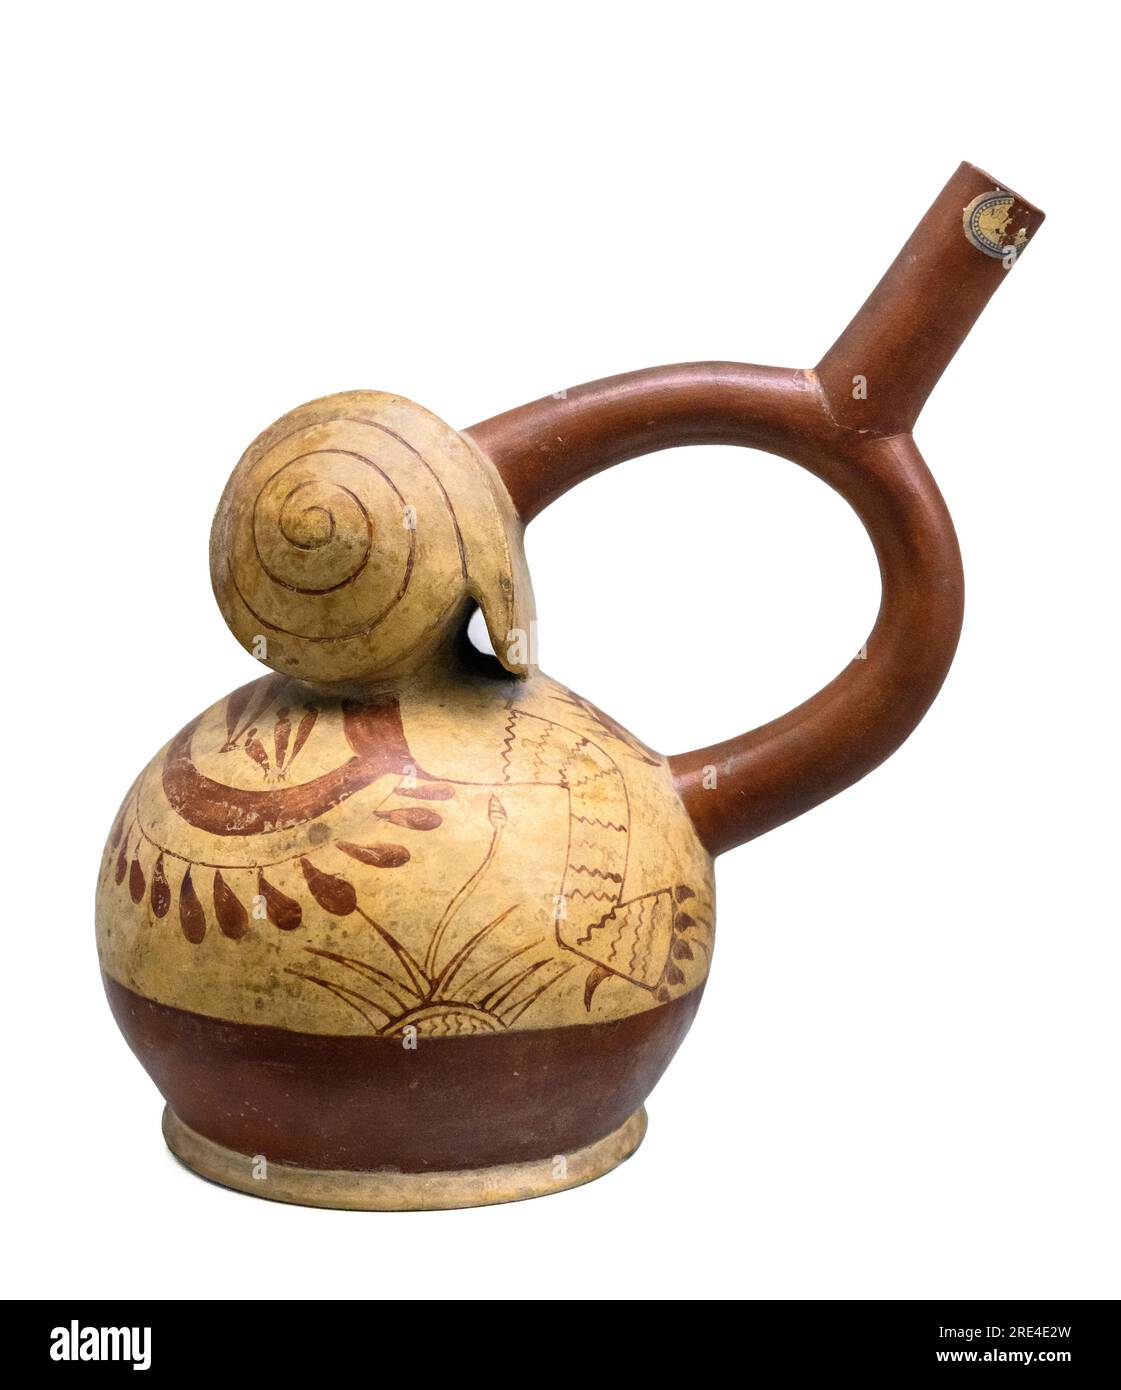 Vaso de cerámica Stirrup-Sout pintado con caracoles y escenas relacionadas con mitos de origen. De la cultura Mochica del Perú. período intermedio temprano be Foto de stock